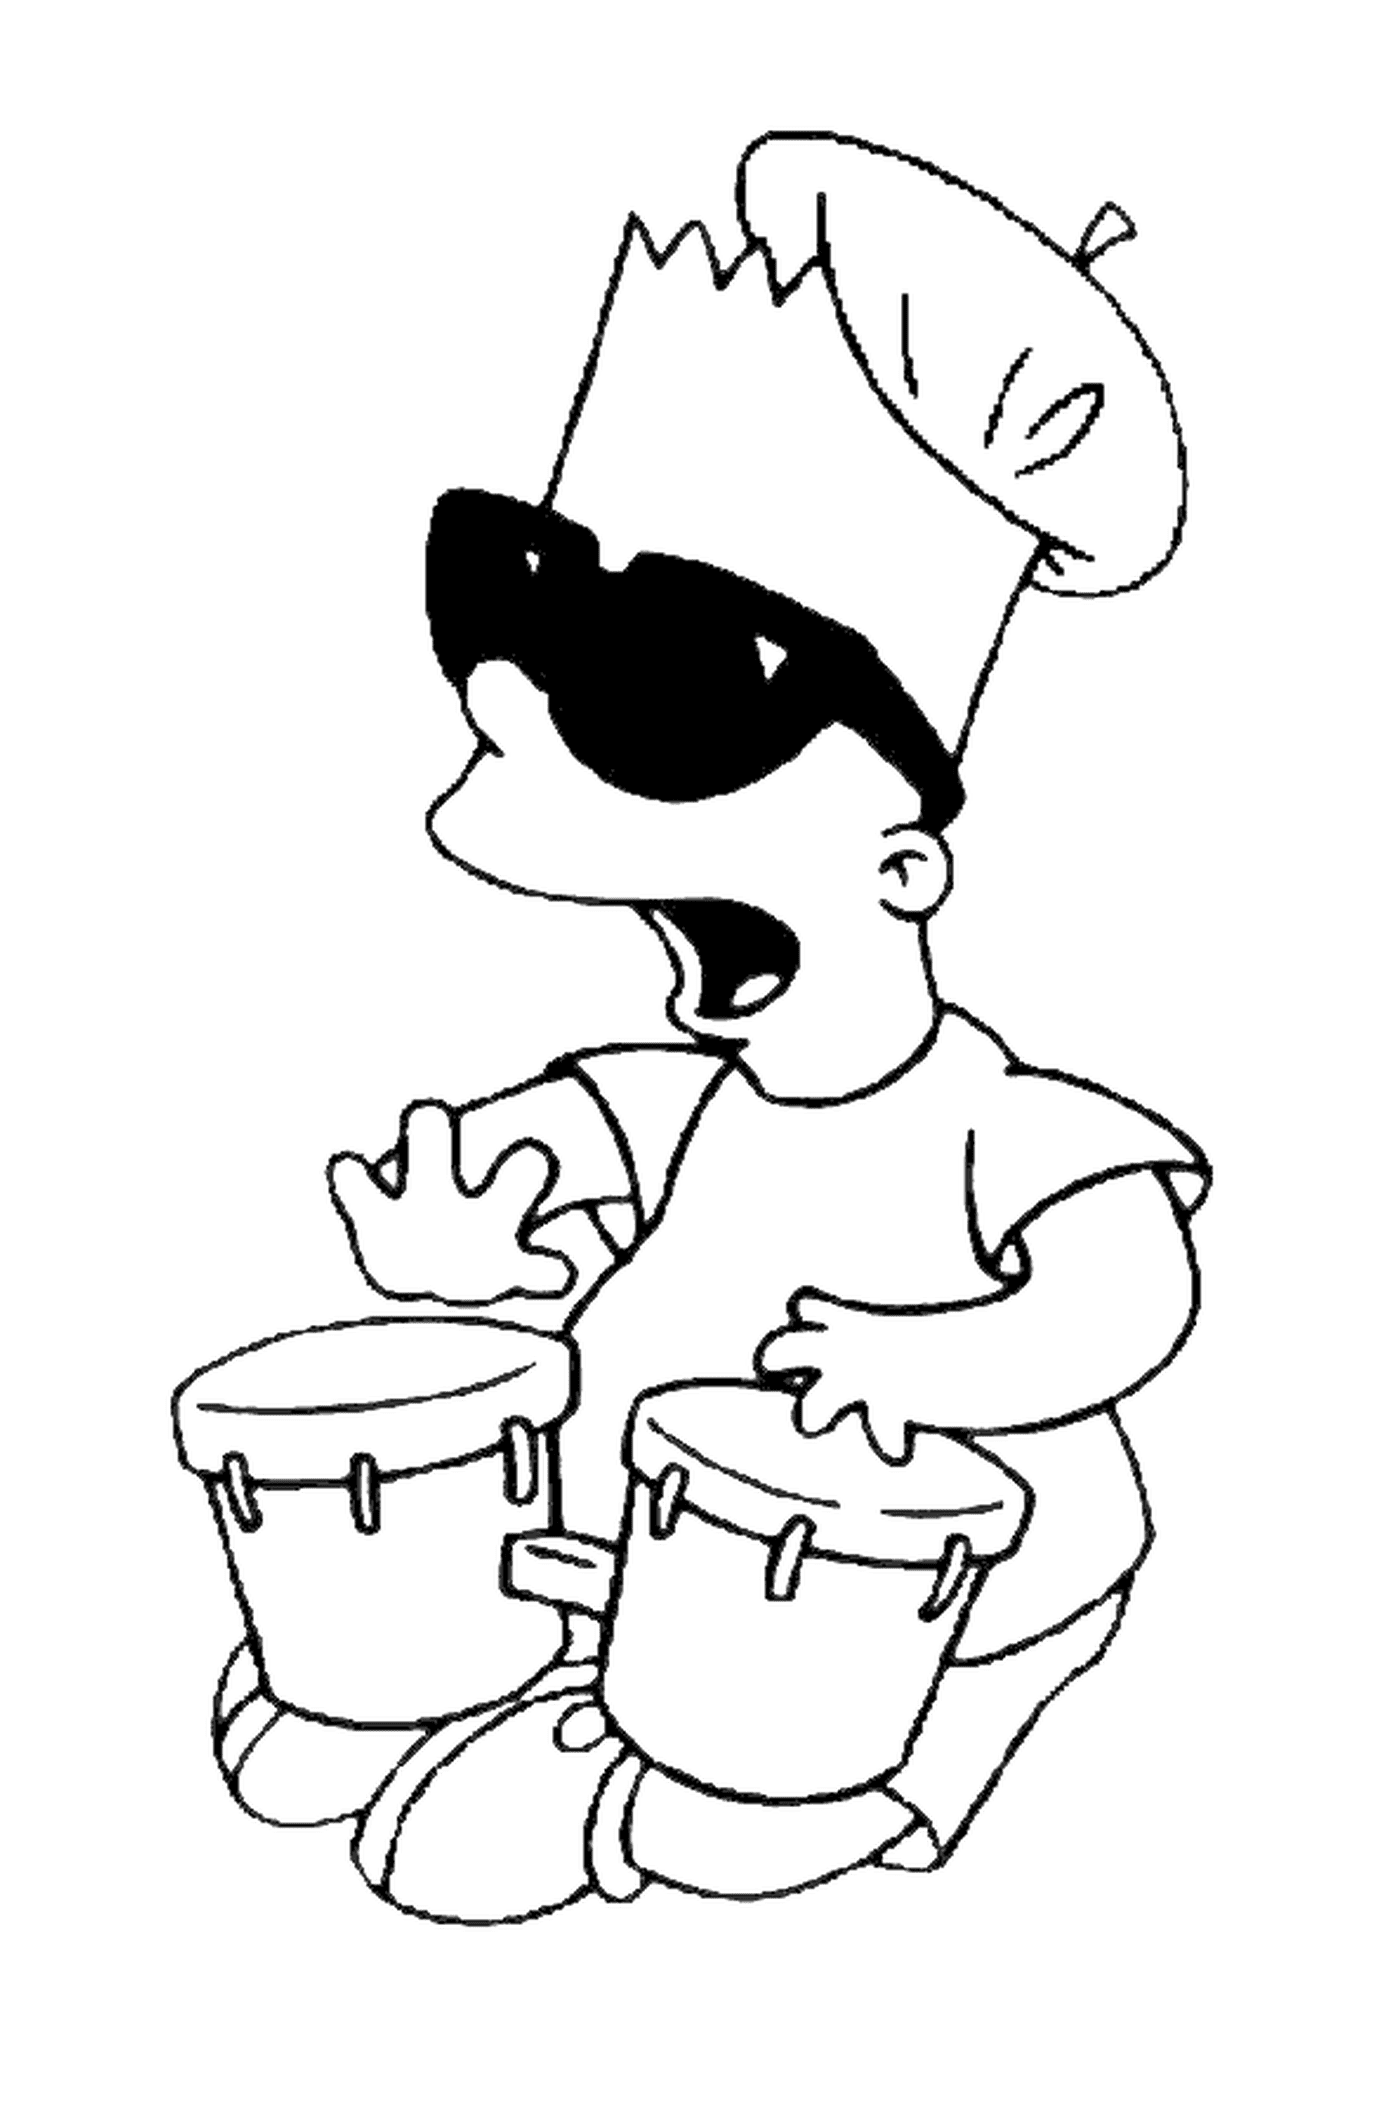  Bart fa musica con tam-tam, nessuno suona uno strumento 